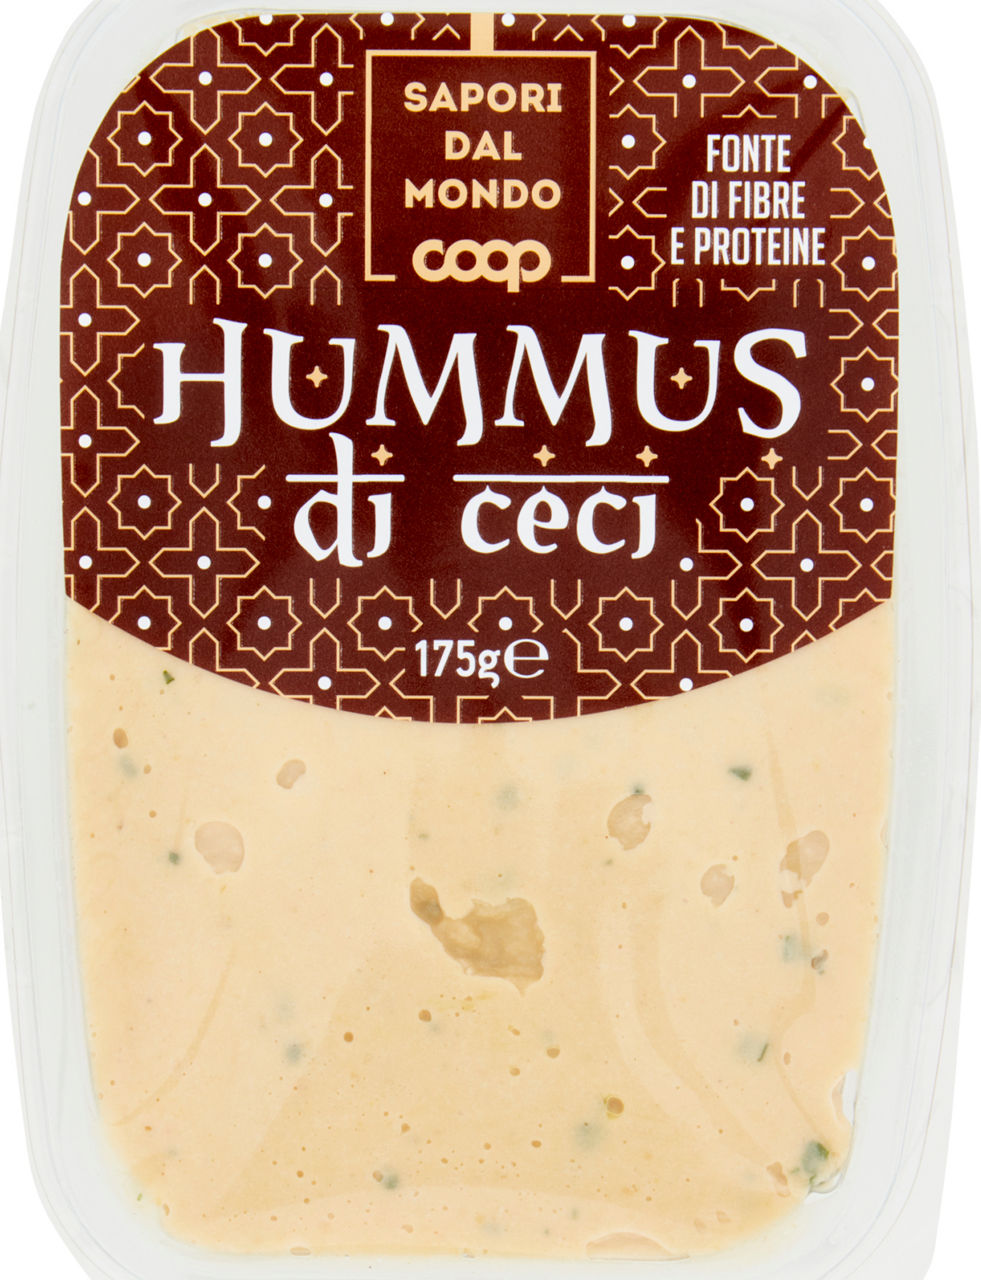 Hummus di ceci sapori dal mondo coop g 175